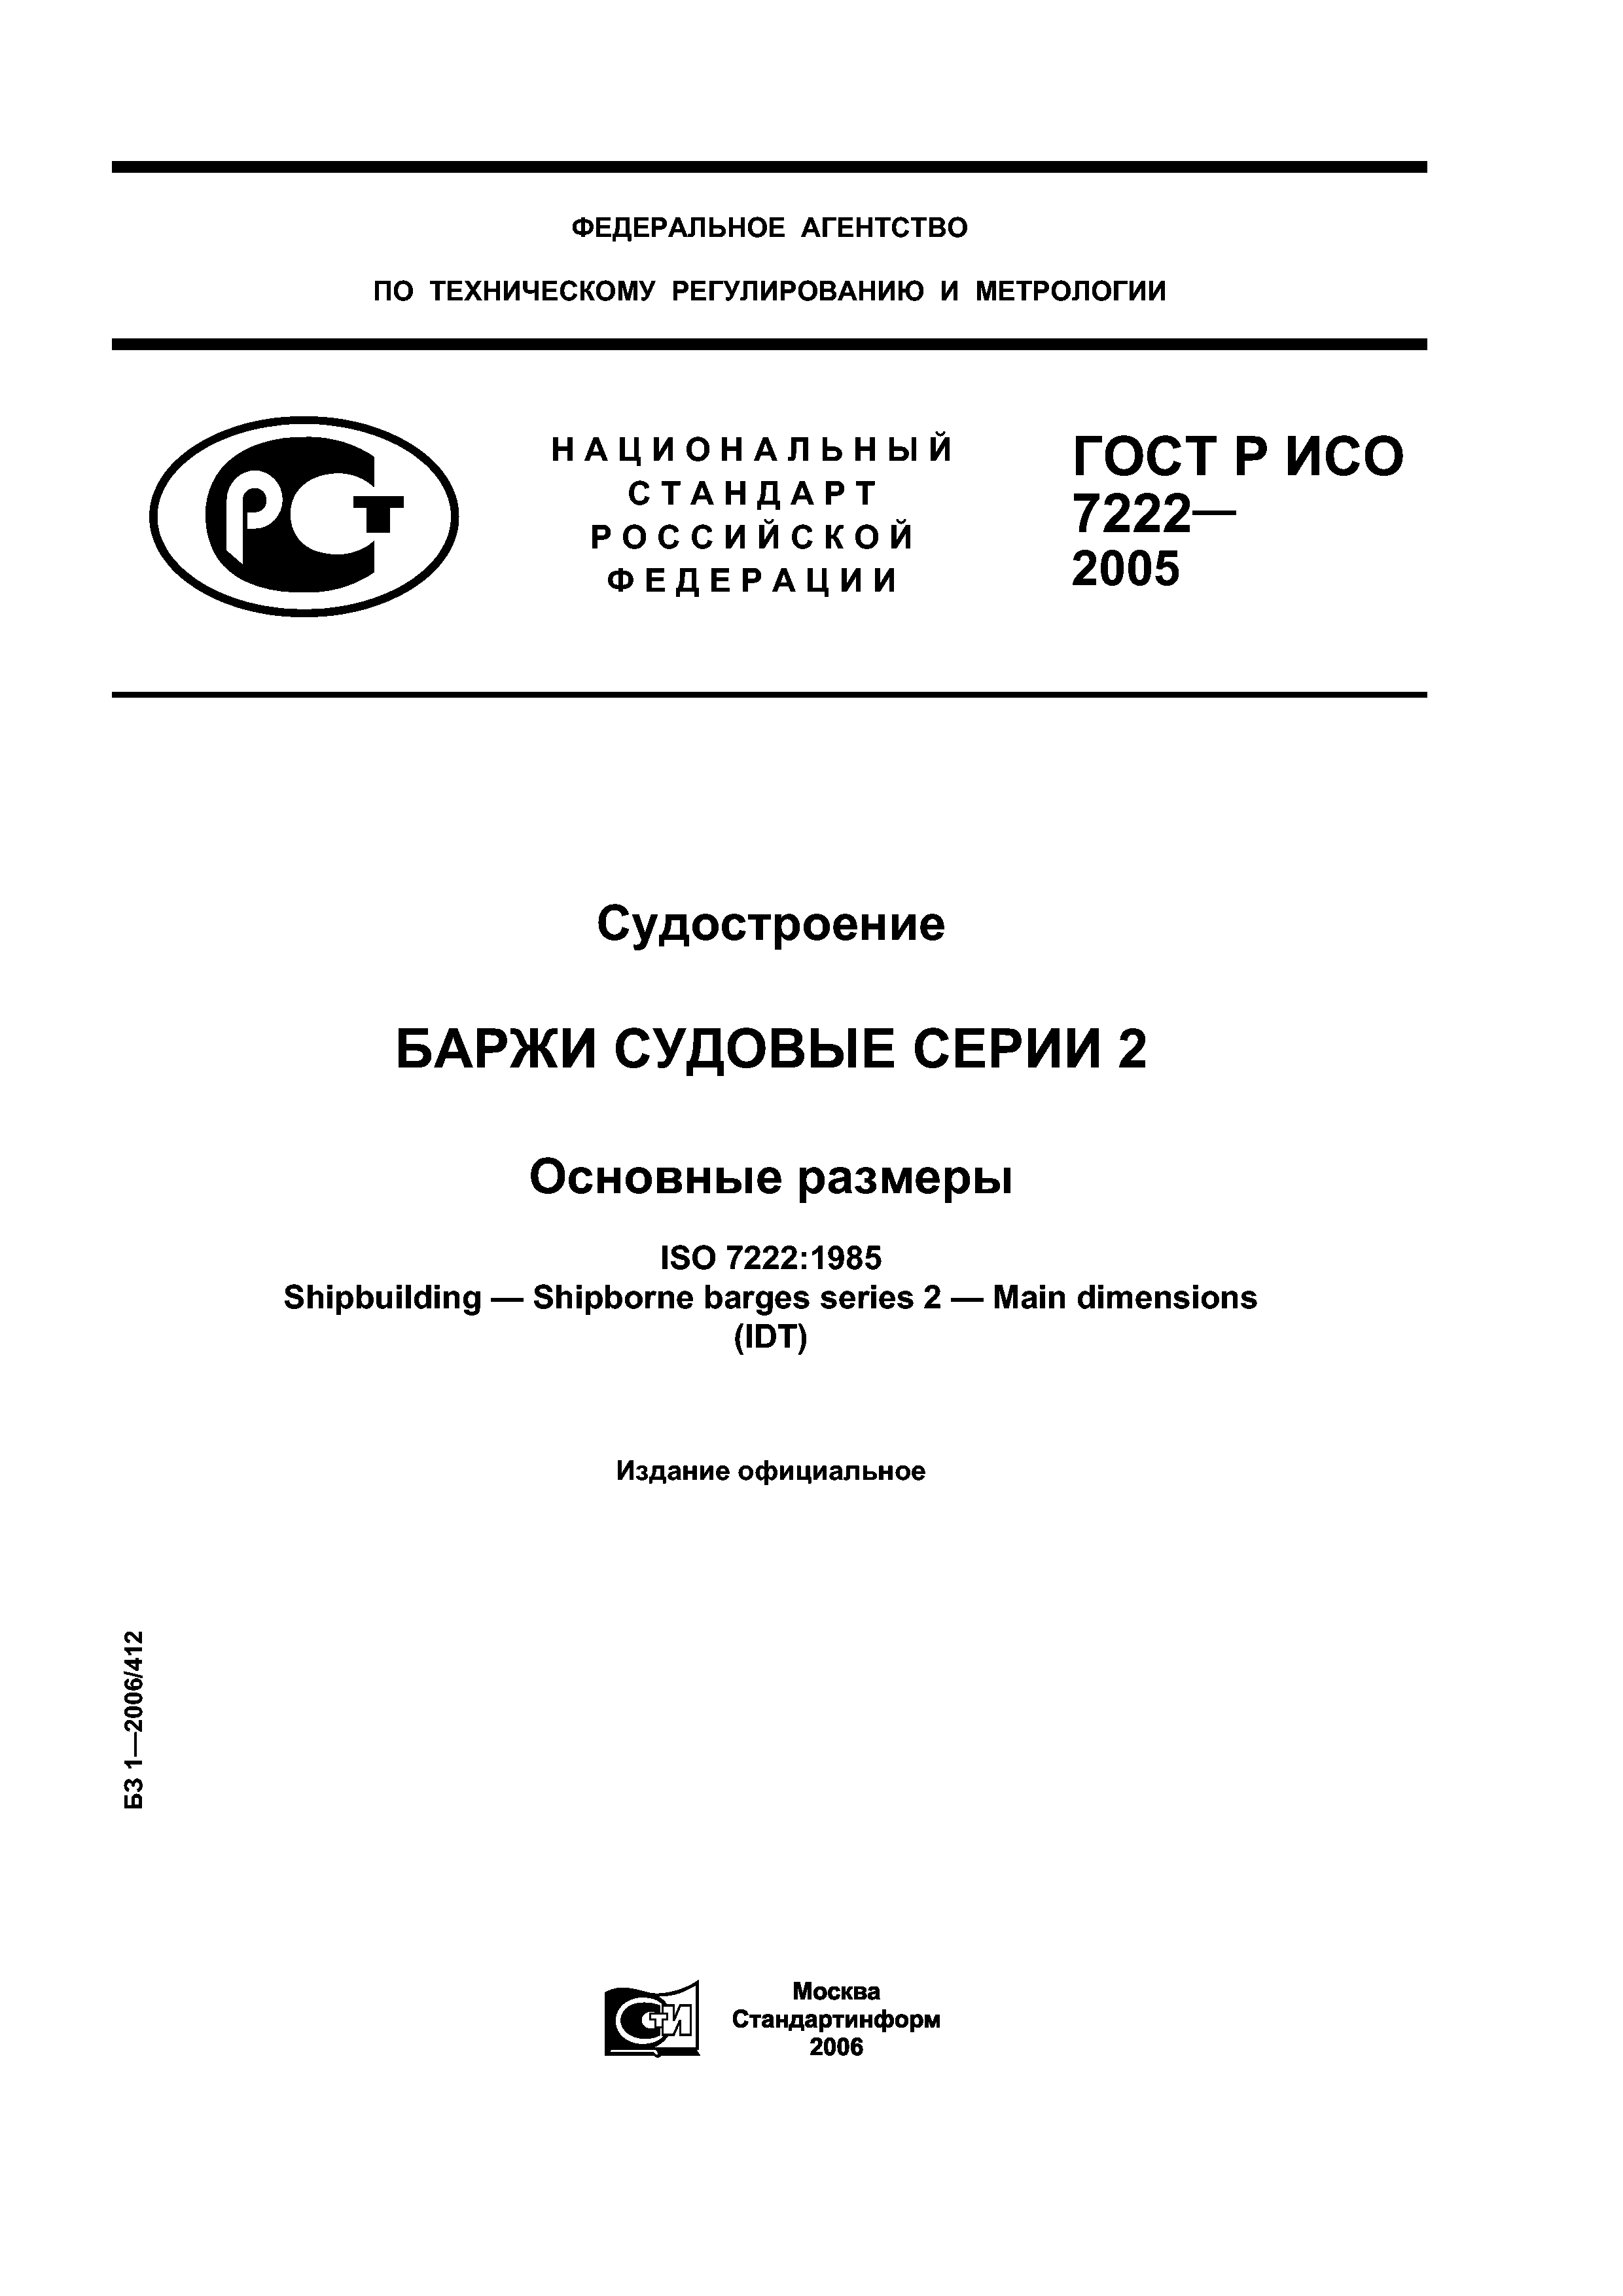 ГОСТ Р ИСО 7222-2005